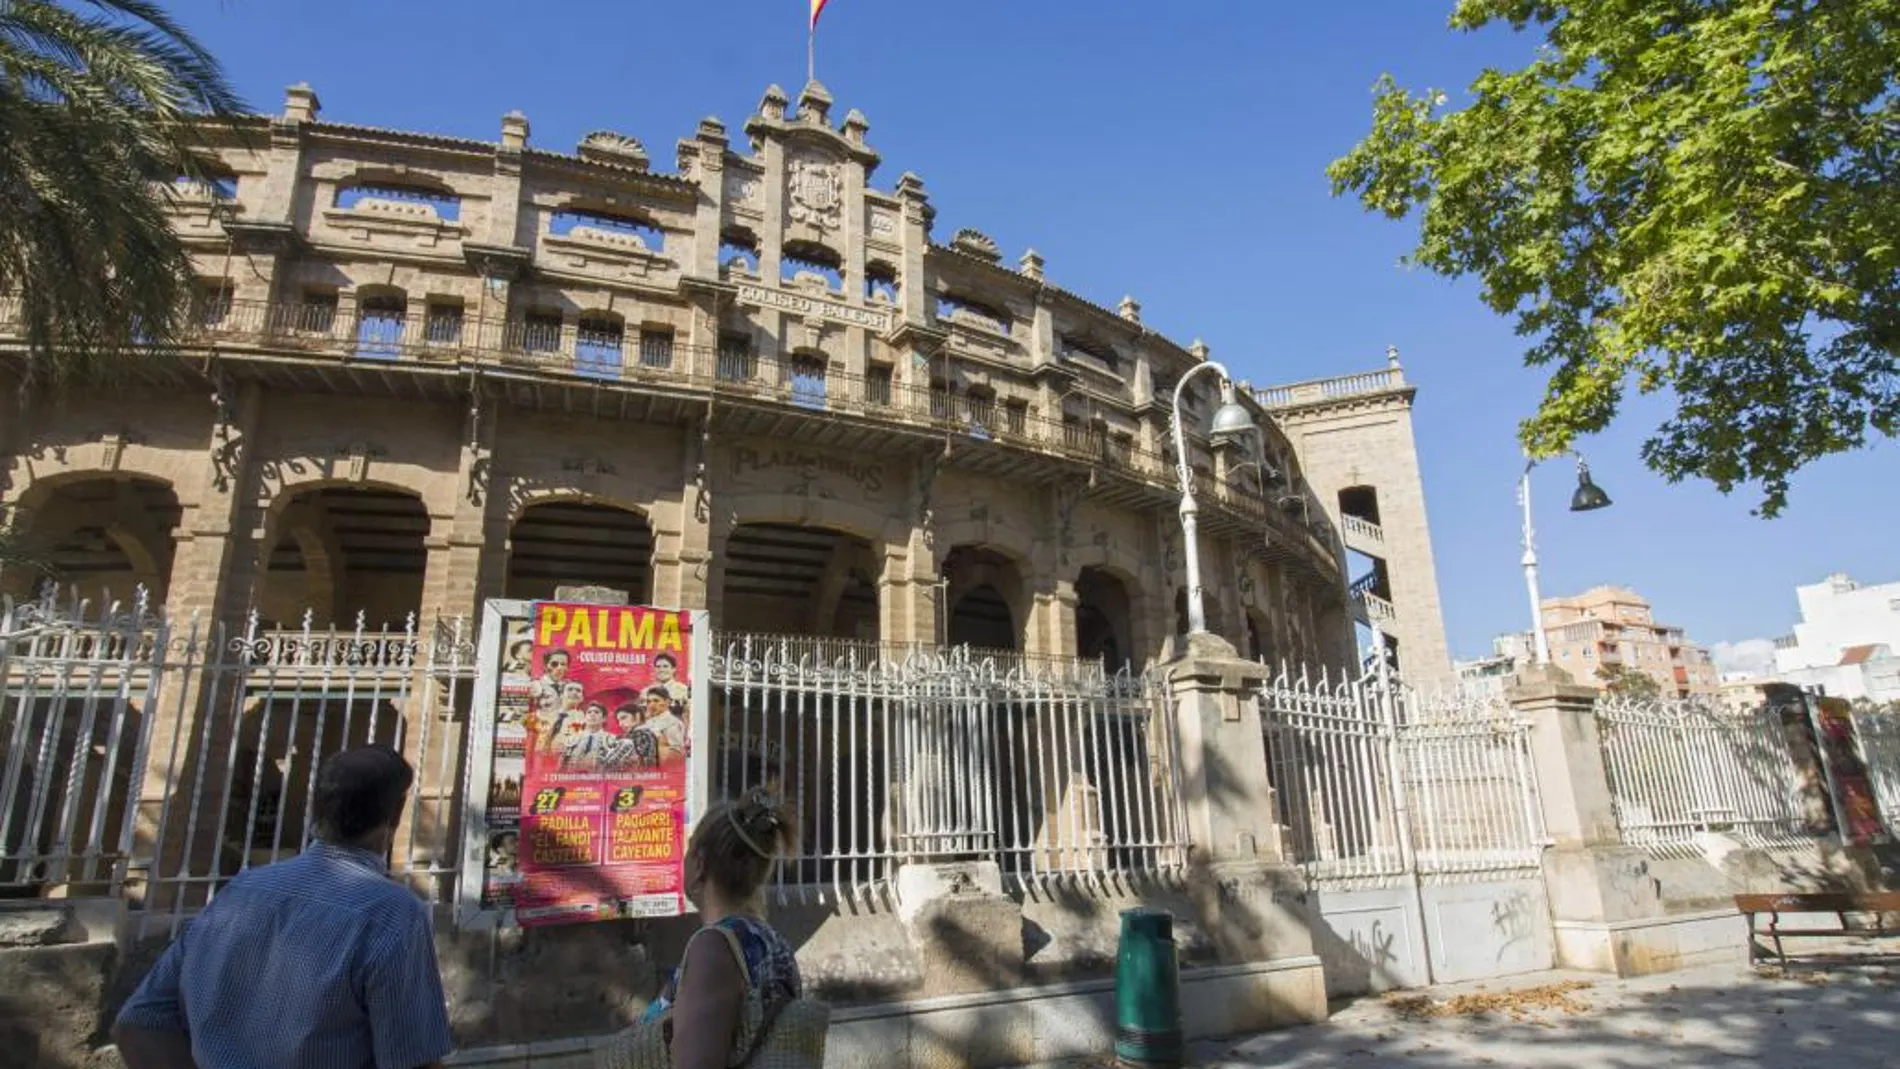 Actual fachada de la Plaza de toros de Palma de Mallorca, conocida popularmente como Coliseo balear